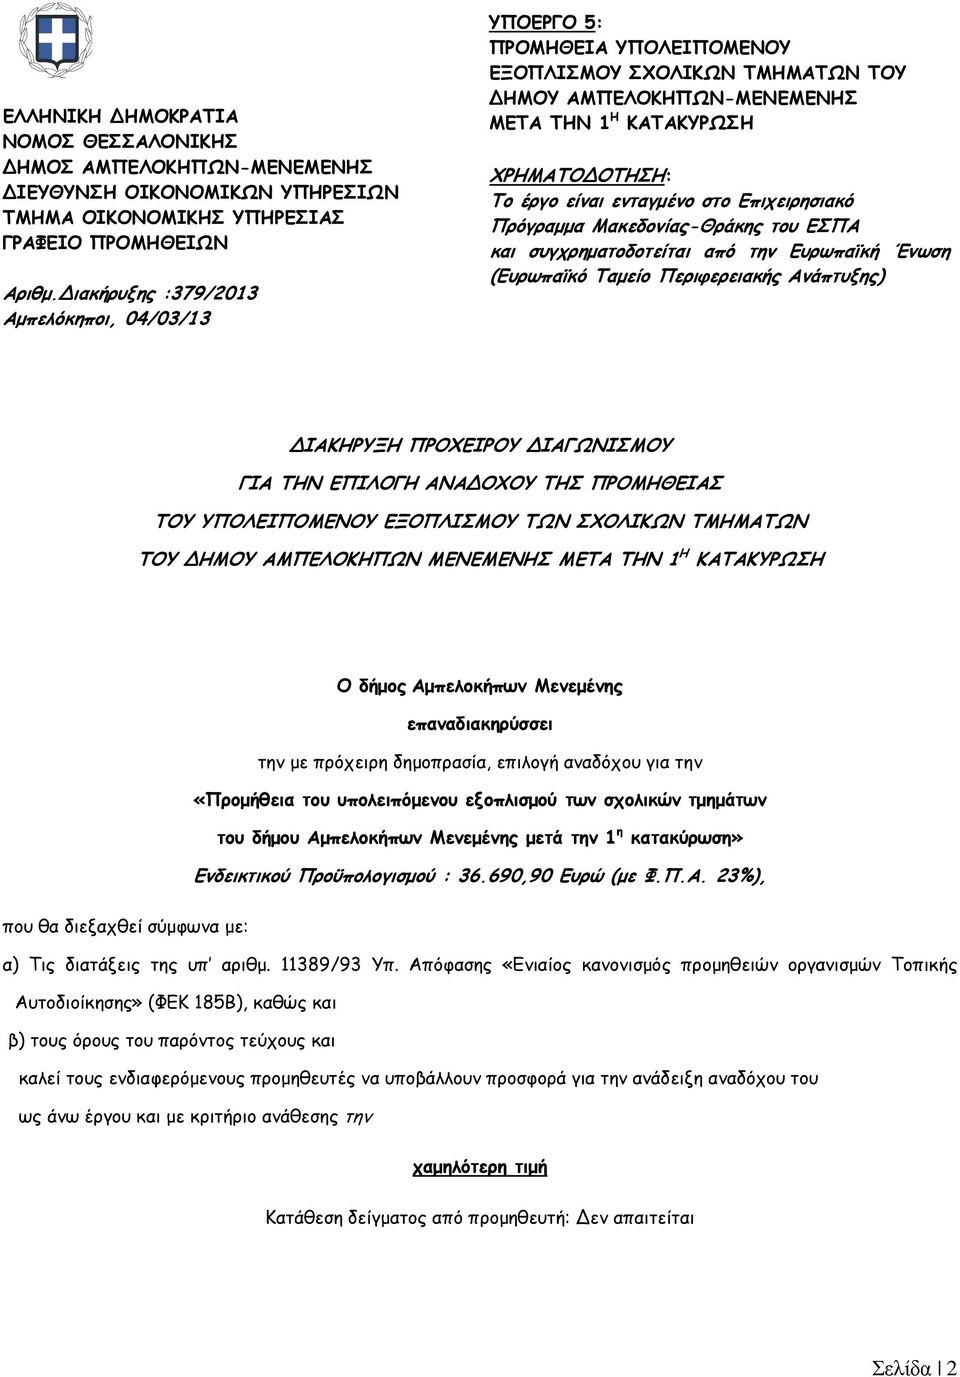 ενταγµένο στο Επιχειρησιακό Πρόγραµµα Μακεδονίας-Θράκης του ΕΣΠΑ και συγχρηµατοδοτείται από την Ευρωπαϊκή Ένωση (Ευρωπαϊκό Ταµείο Περιφερειακής Ανάπτυξης) ΔΙΑΚΗΡΥΞΗ ΠΡΟΧΕΙΡΟΥ ΔΙΑΓΩΝΙΣΜΟΥ ΓΙΑ ΤΗΝ